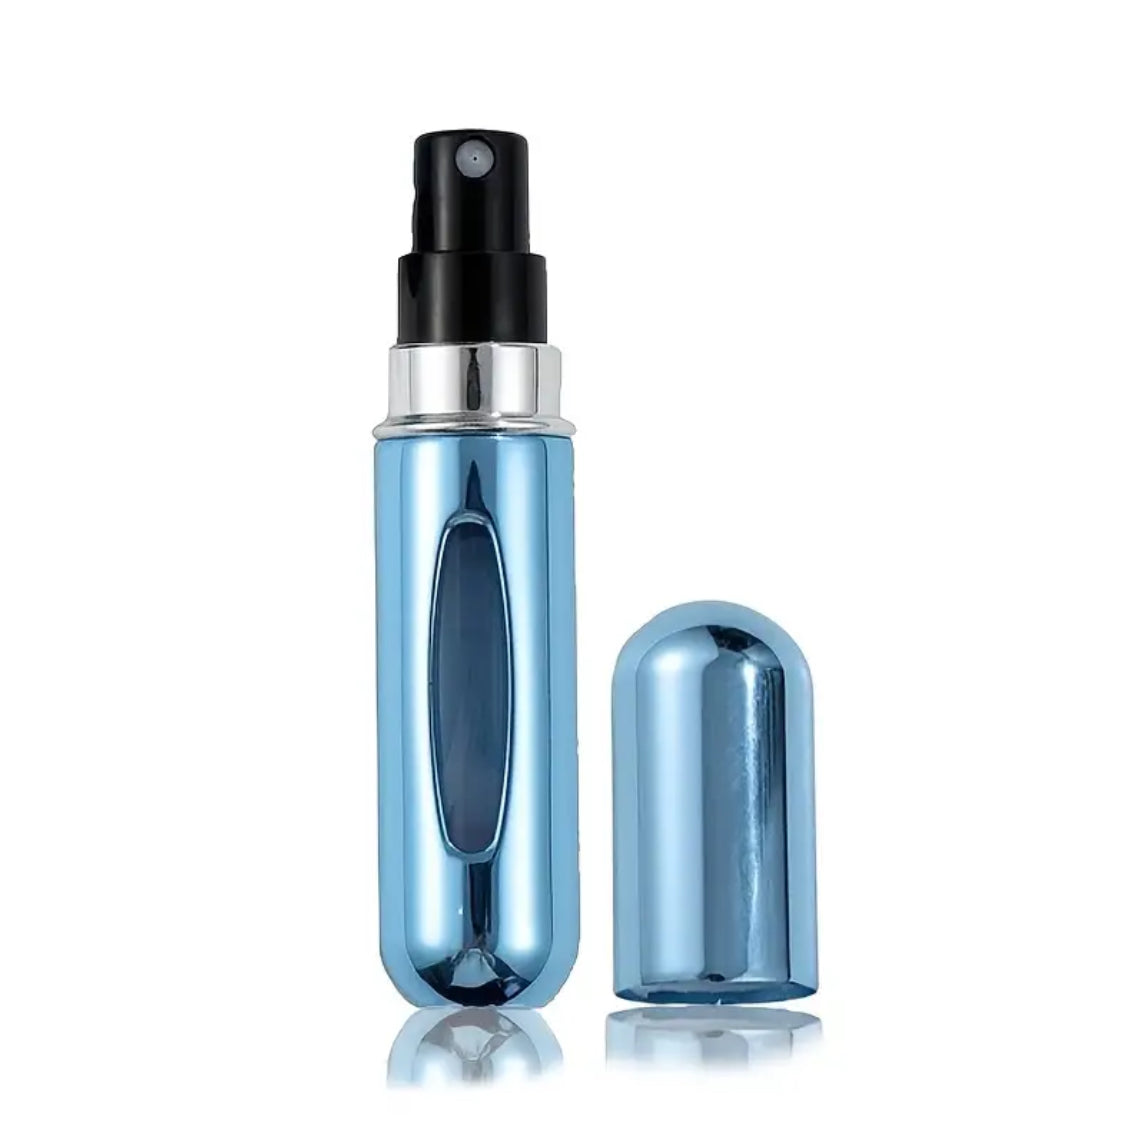 5ml Refillable Travel Spray Bottle